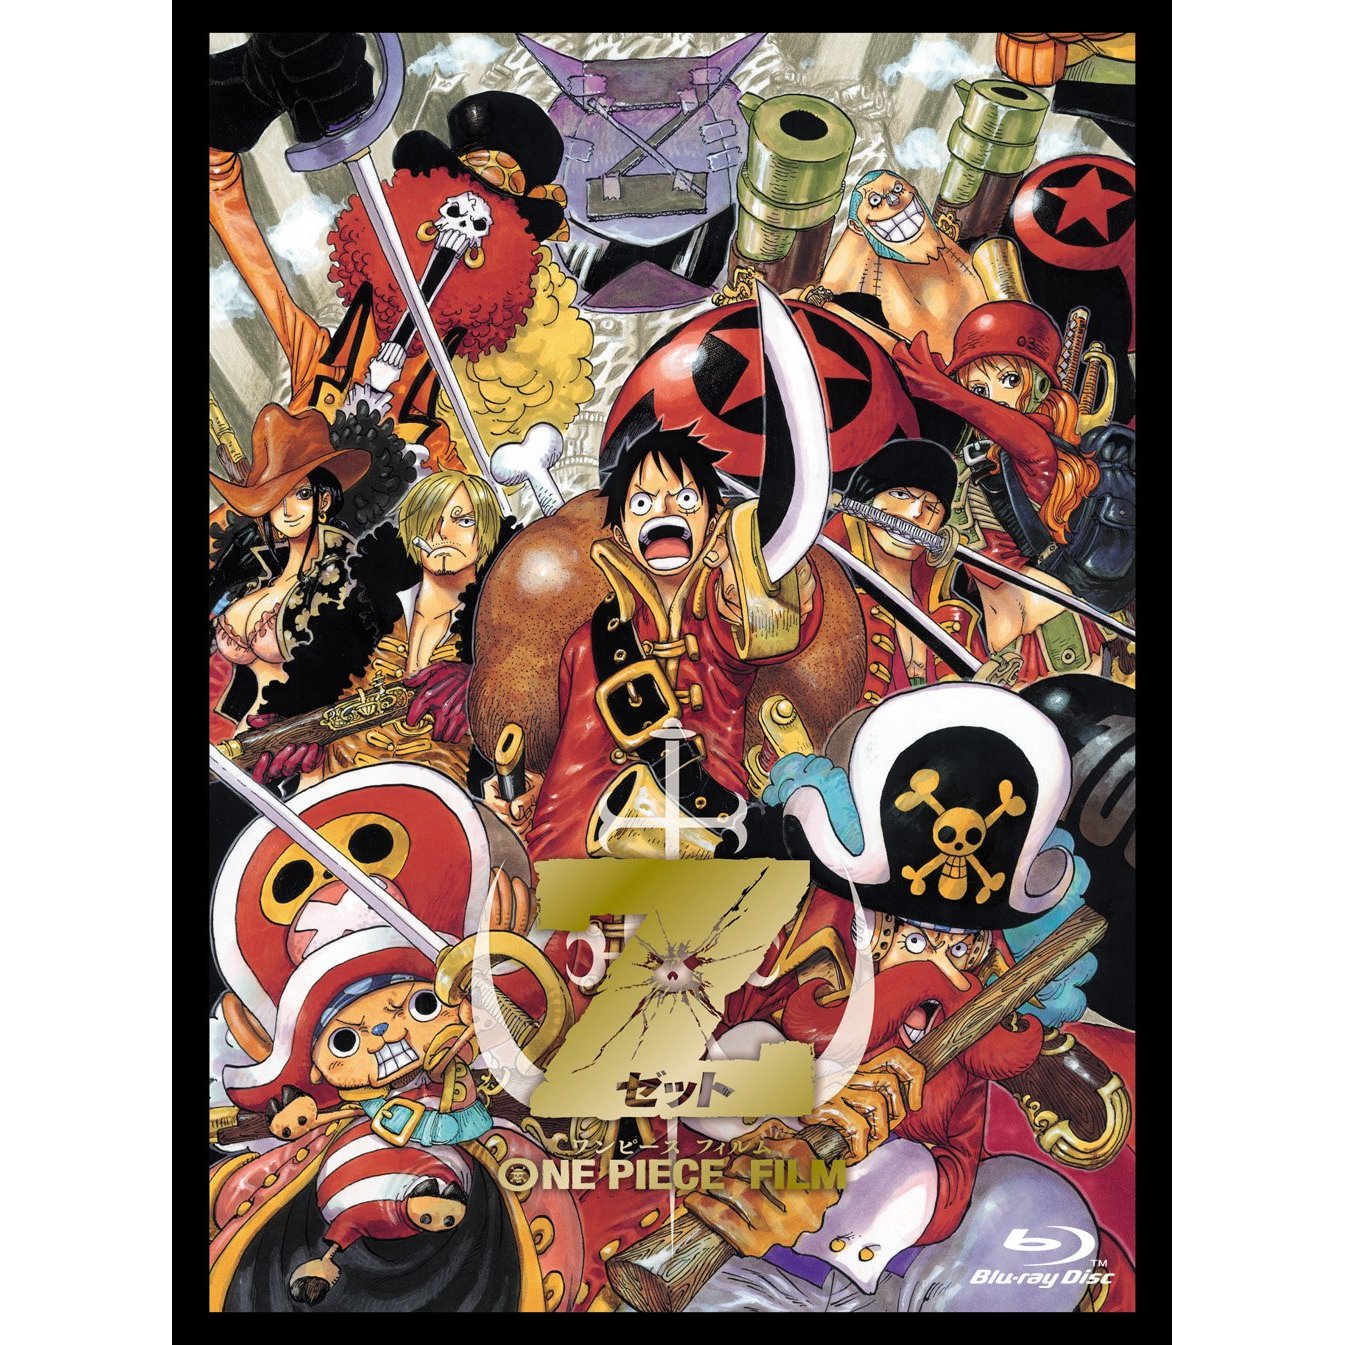 One Piece エピソード オブ ルフィ ハンドアイランドの冒険 初回生産限定版 の在庫状況を紹介 ワンピース初回限定シリーズはココで安く購入出来る